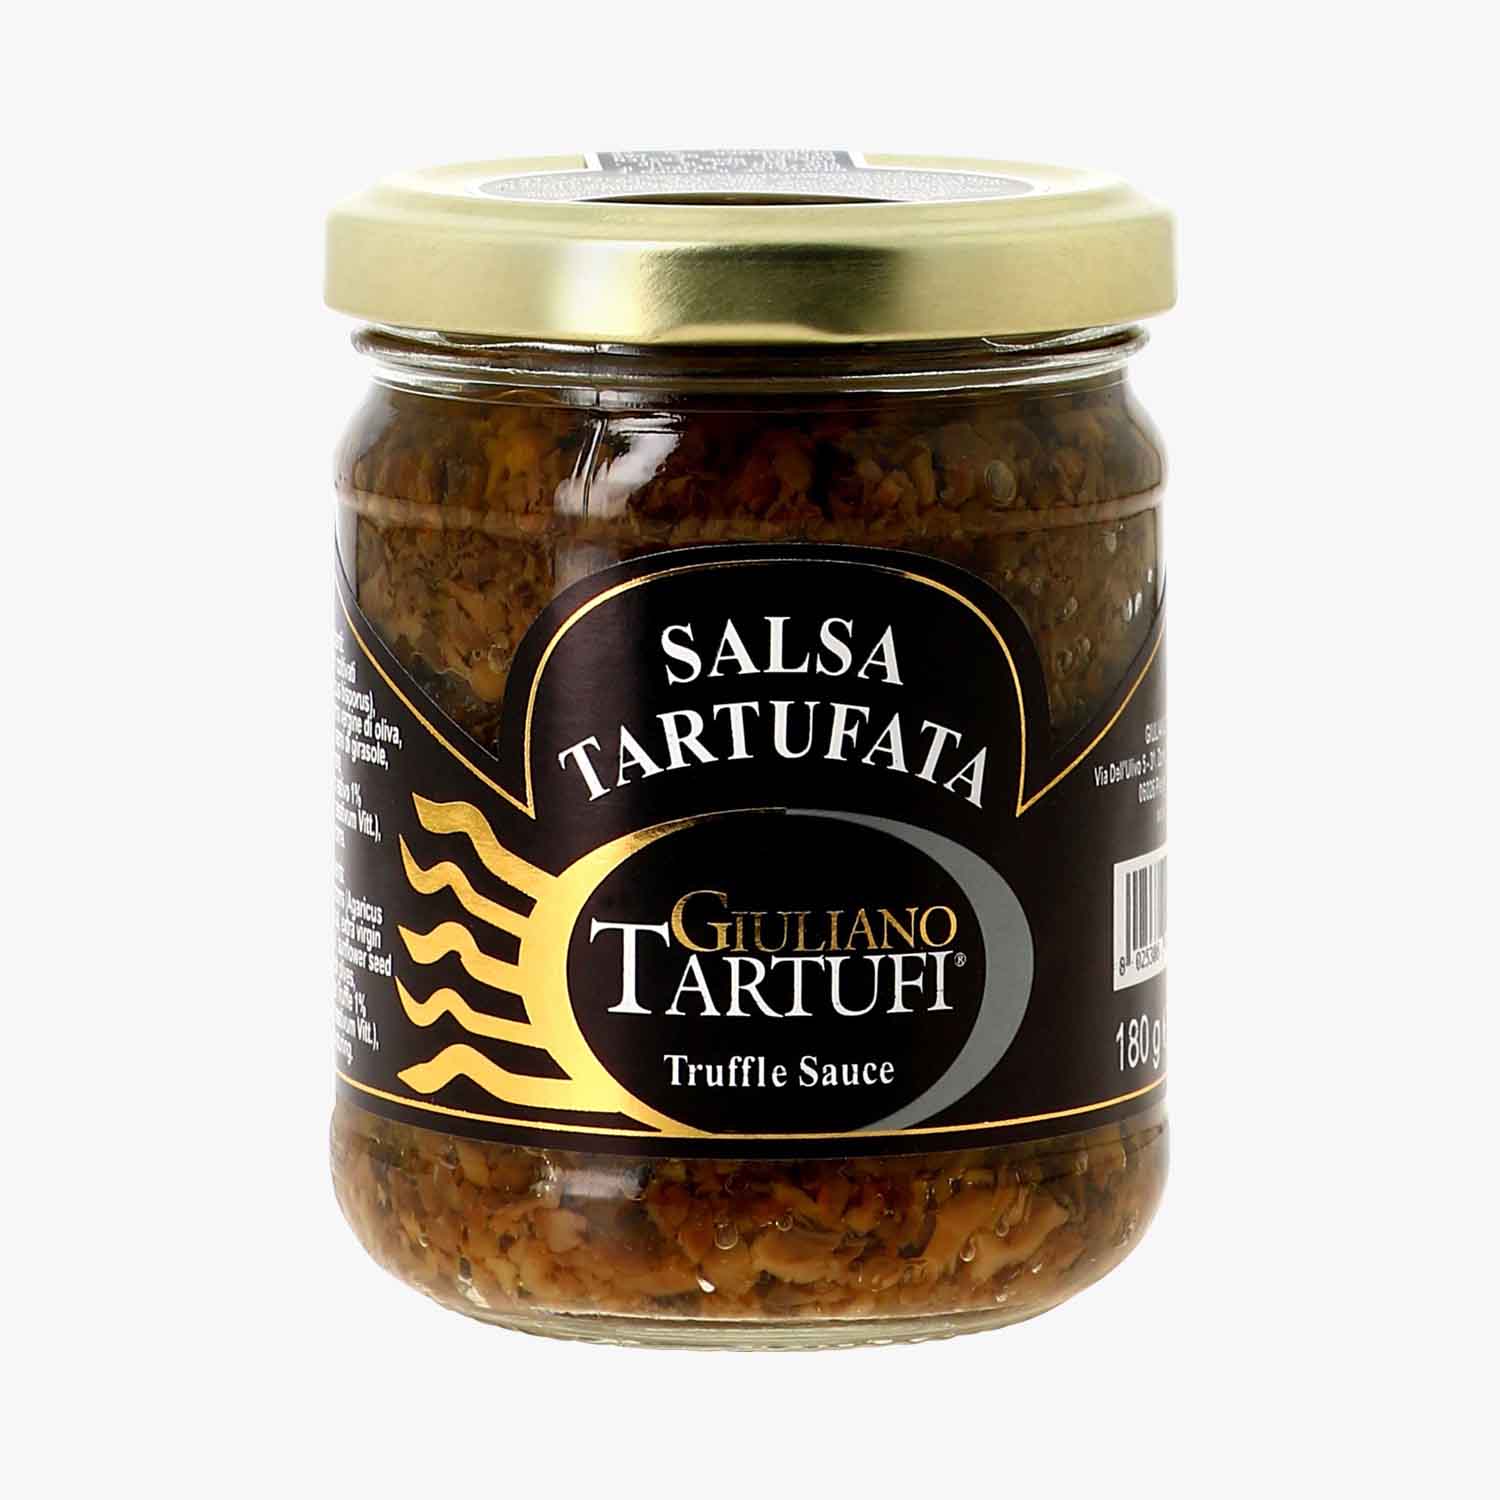 Salsa tartufata - Giuliano Tartufi